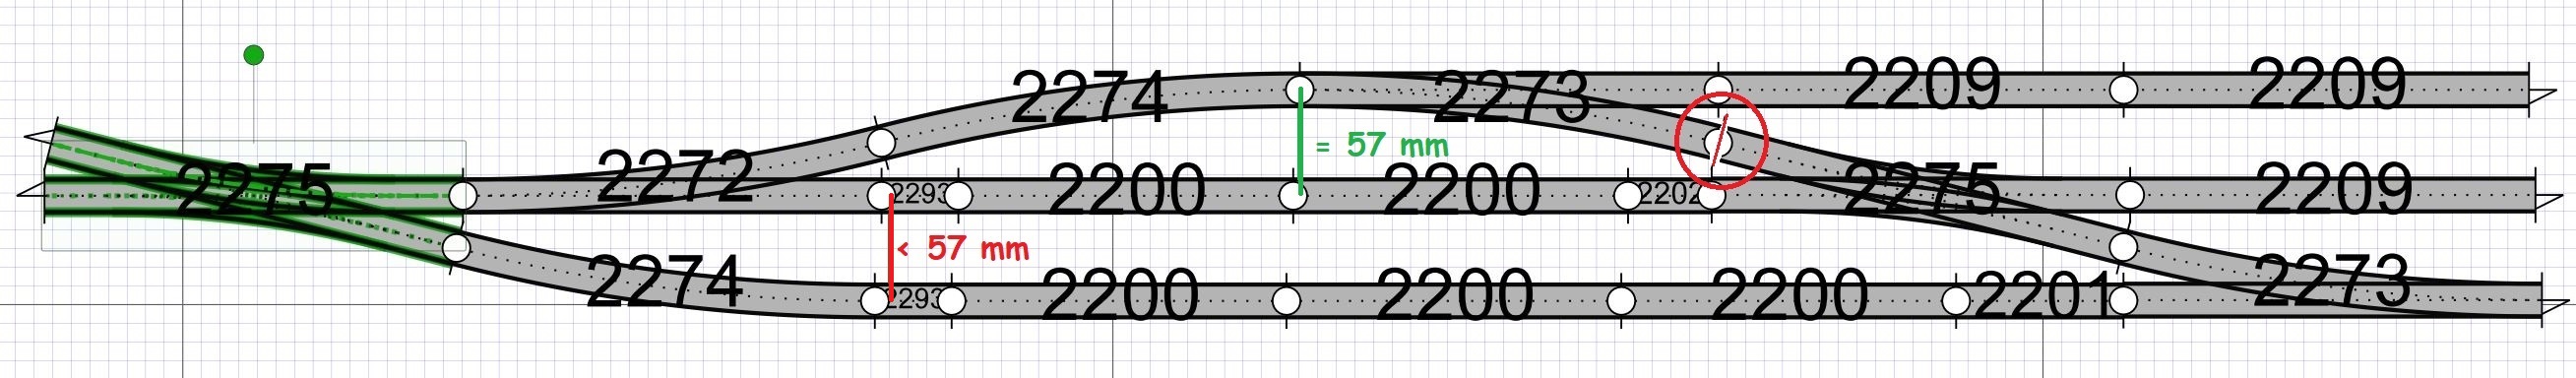 2020-03-21 Geometrie K rail slanke wissels (Eric-Paul).jpg